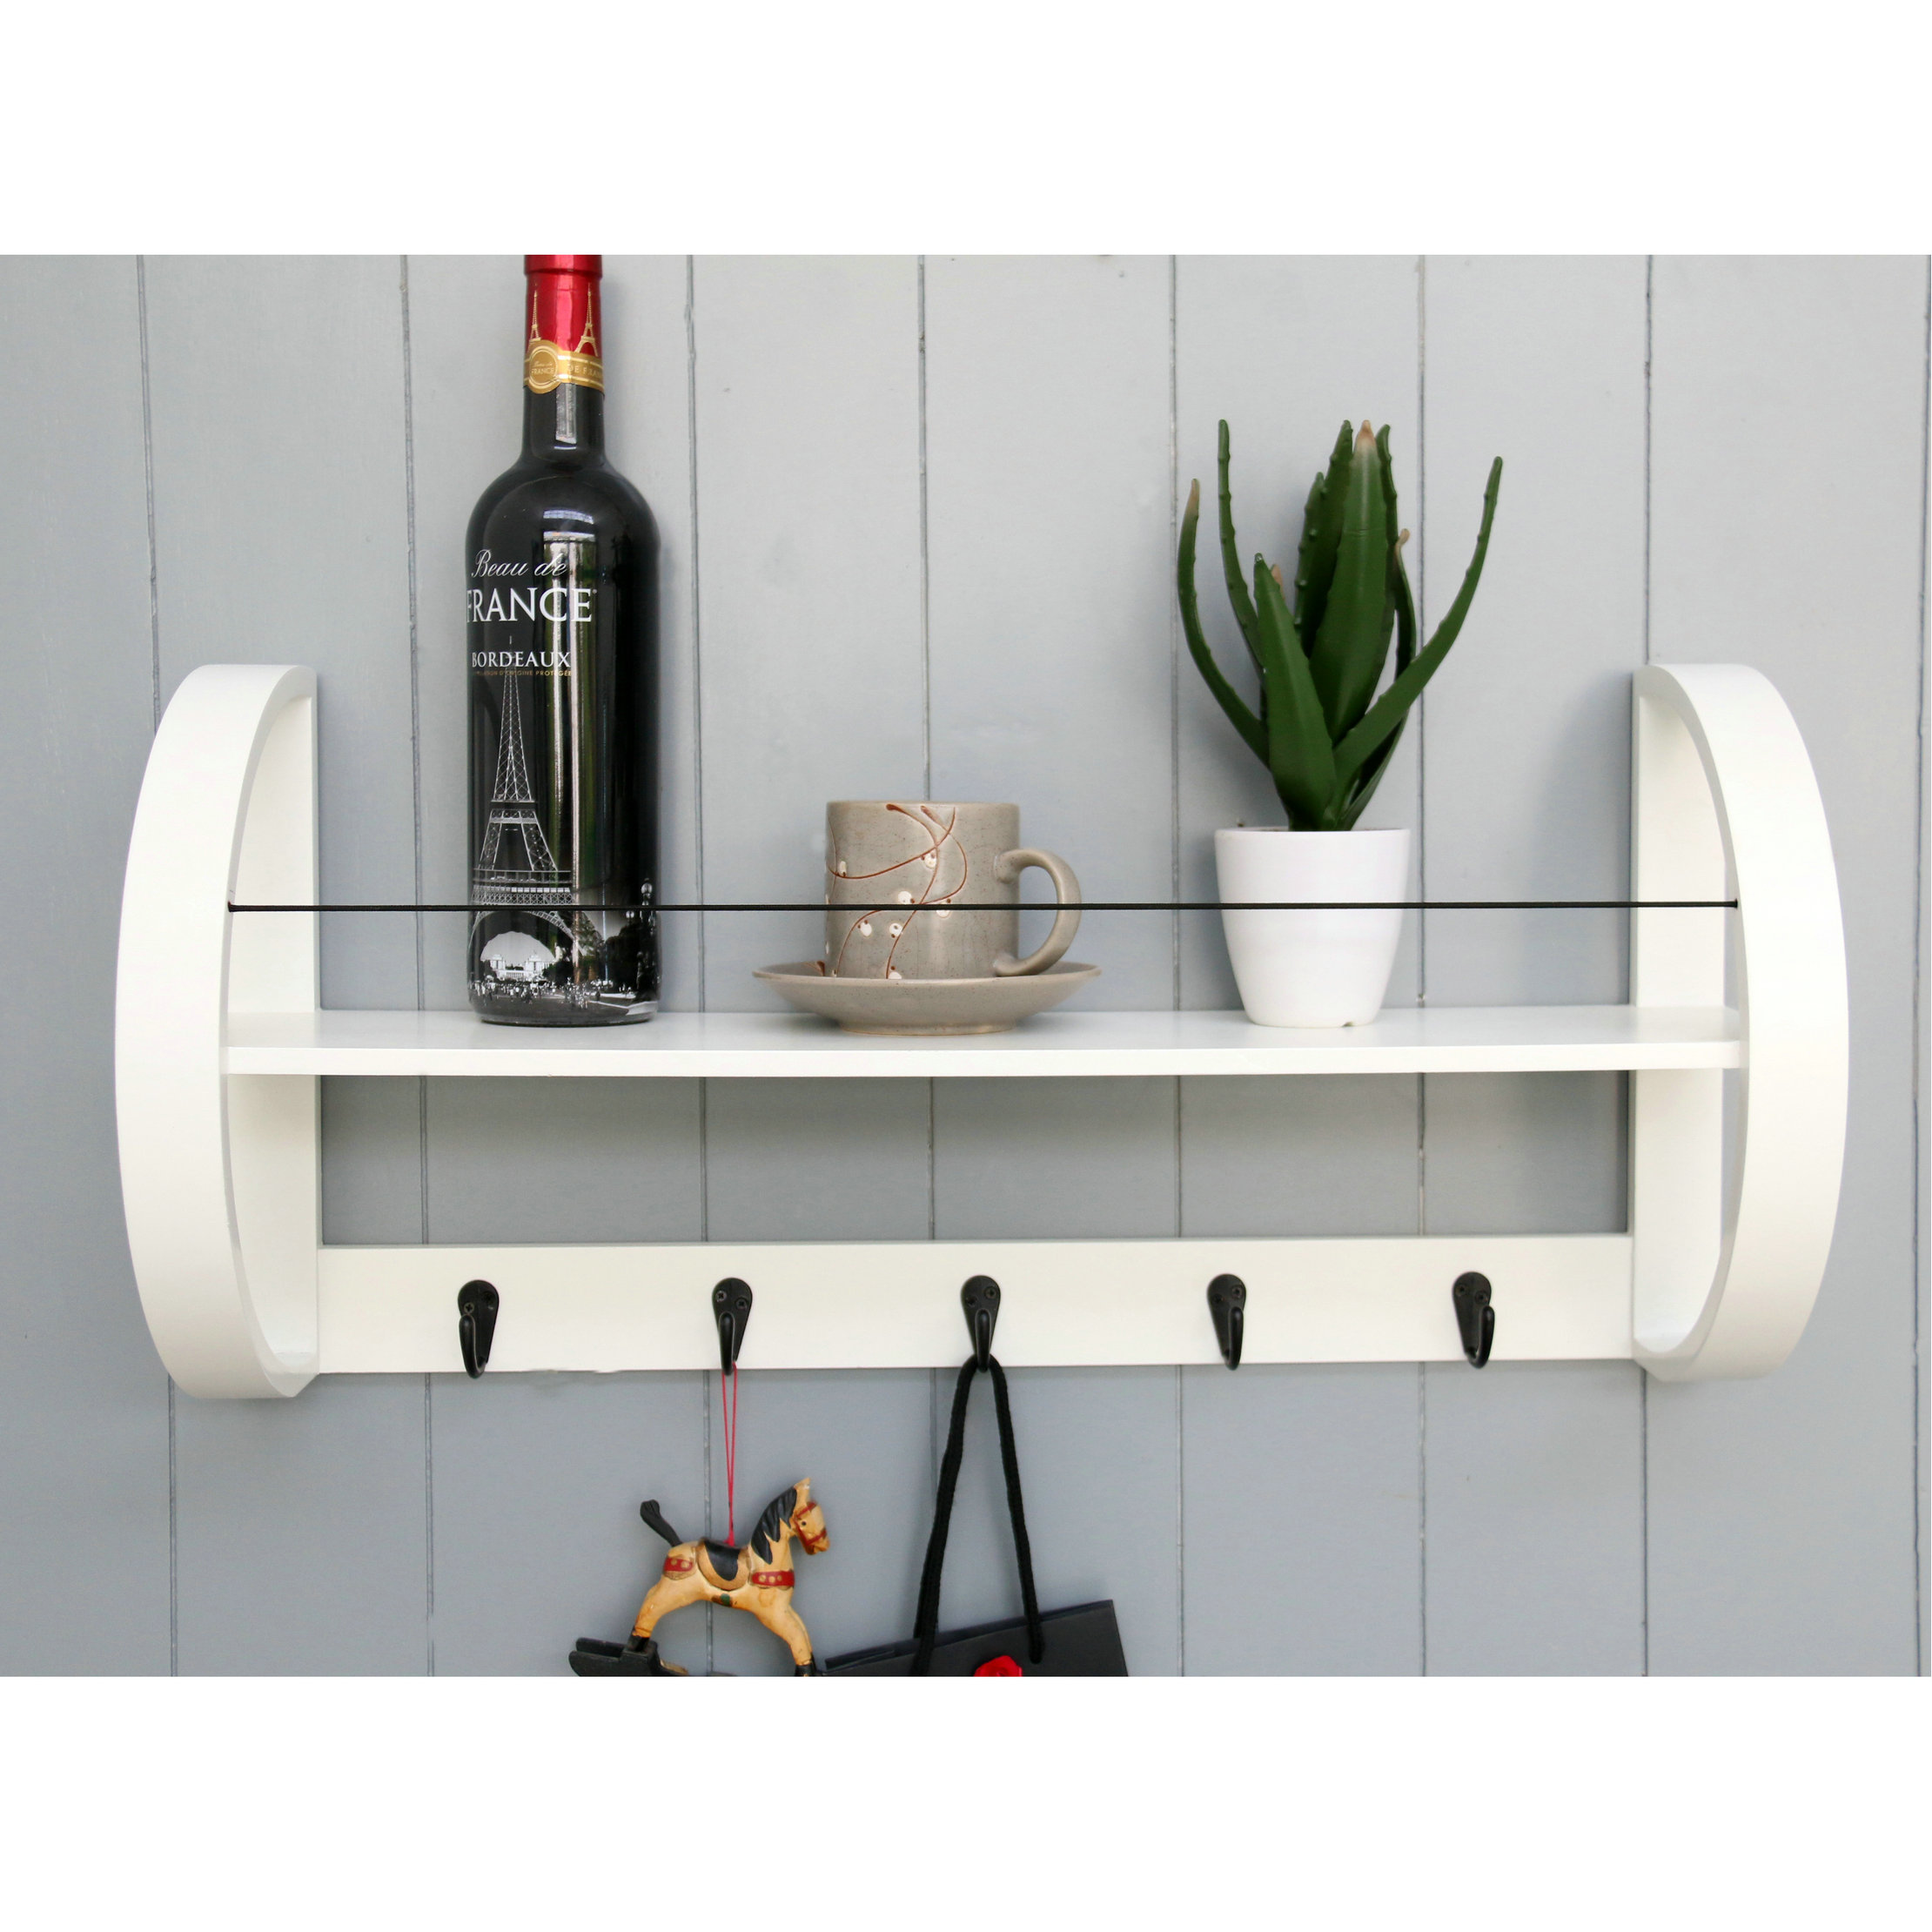 FU-21364 Wood shelf with hooks 60x16.5x28cm